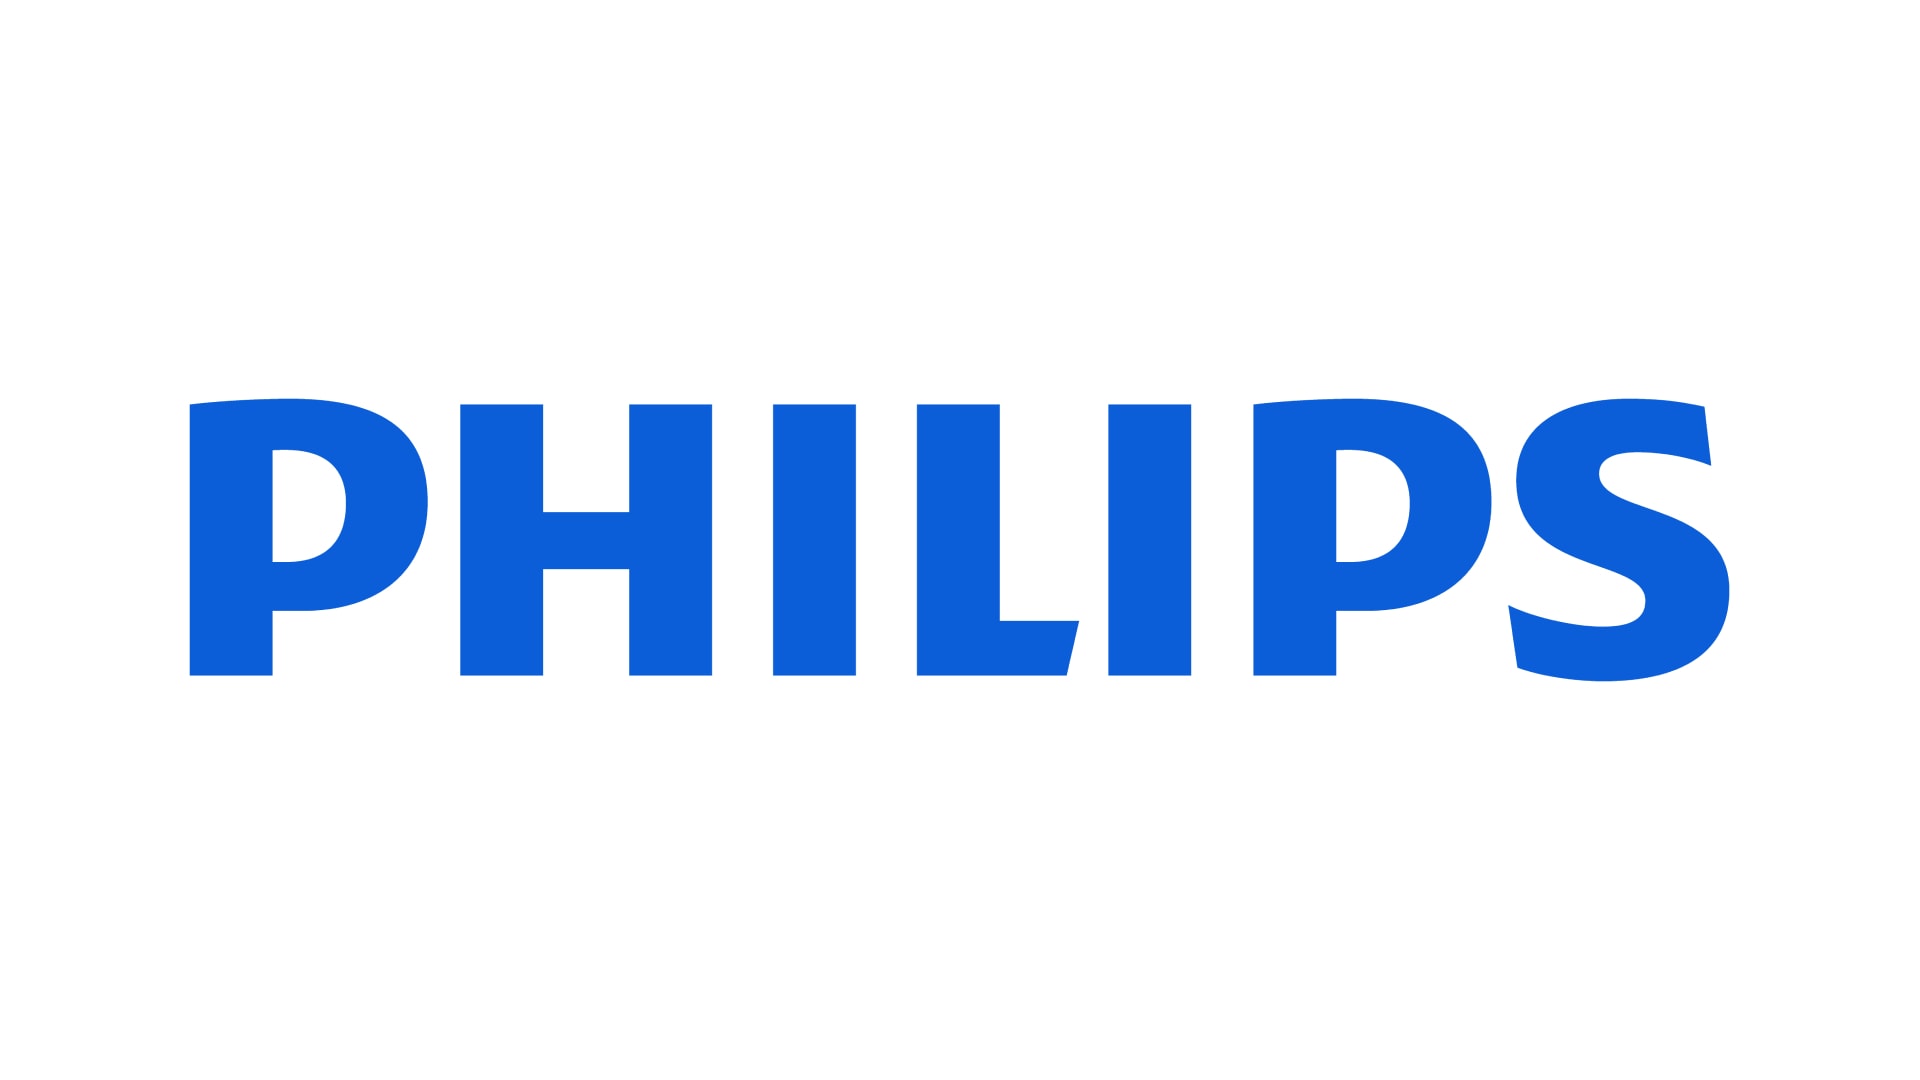 Philips Türkiye’nin stratejik iletişim ajansı Marjinal Porter Novelli oldu